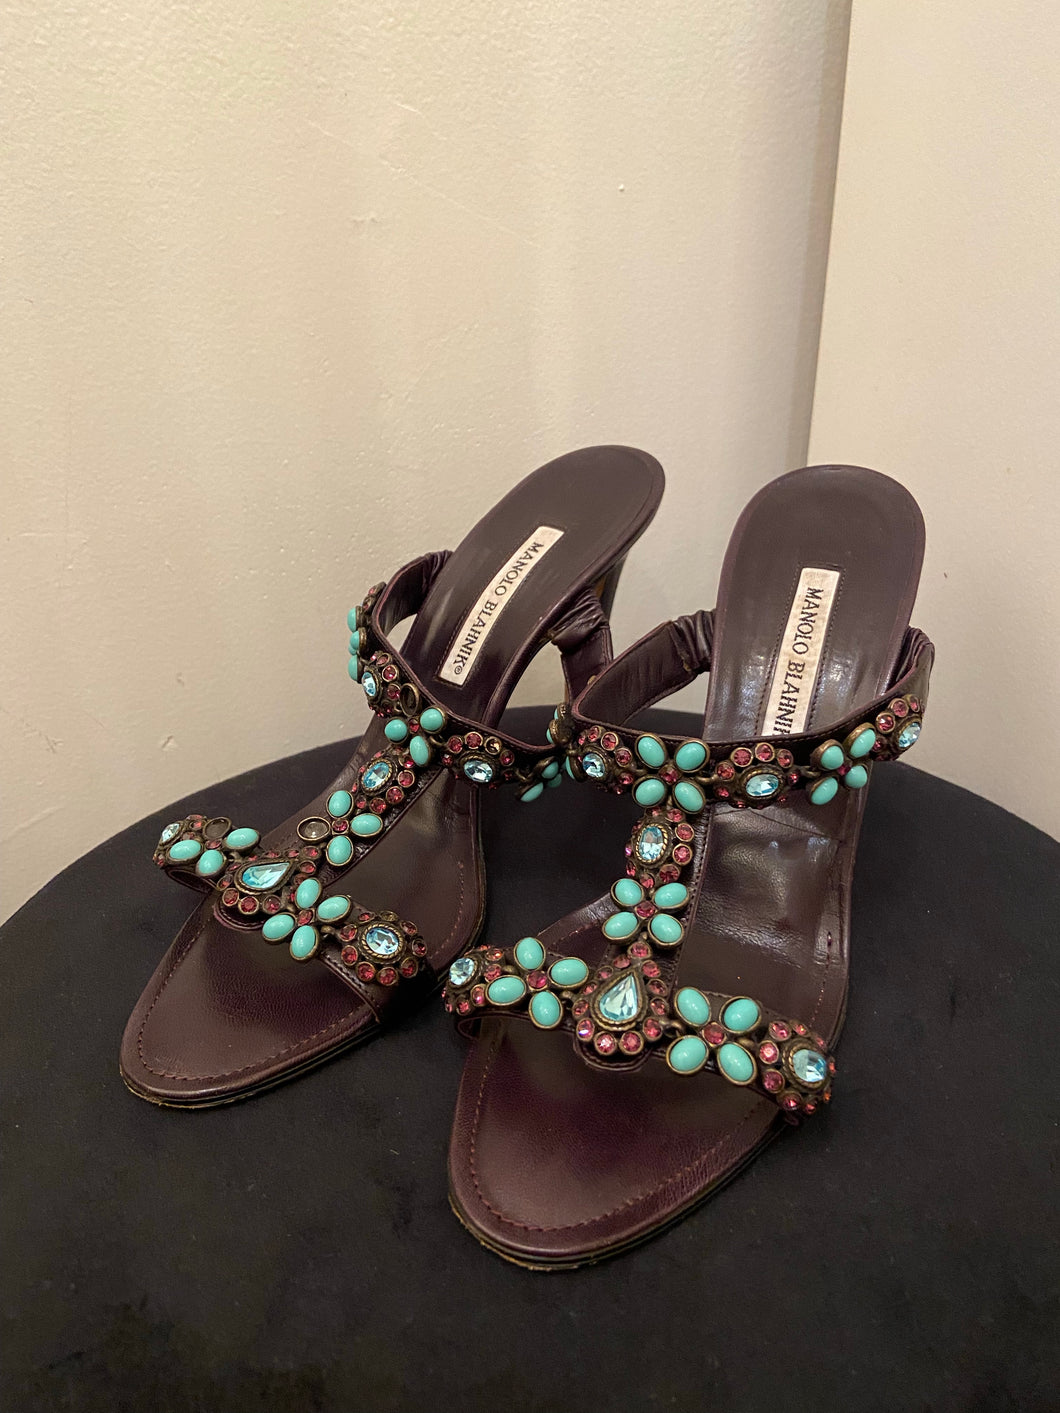 Manolo Blahnik jeweled heeled sandals